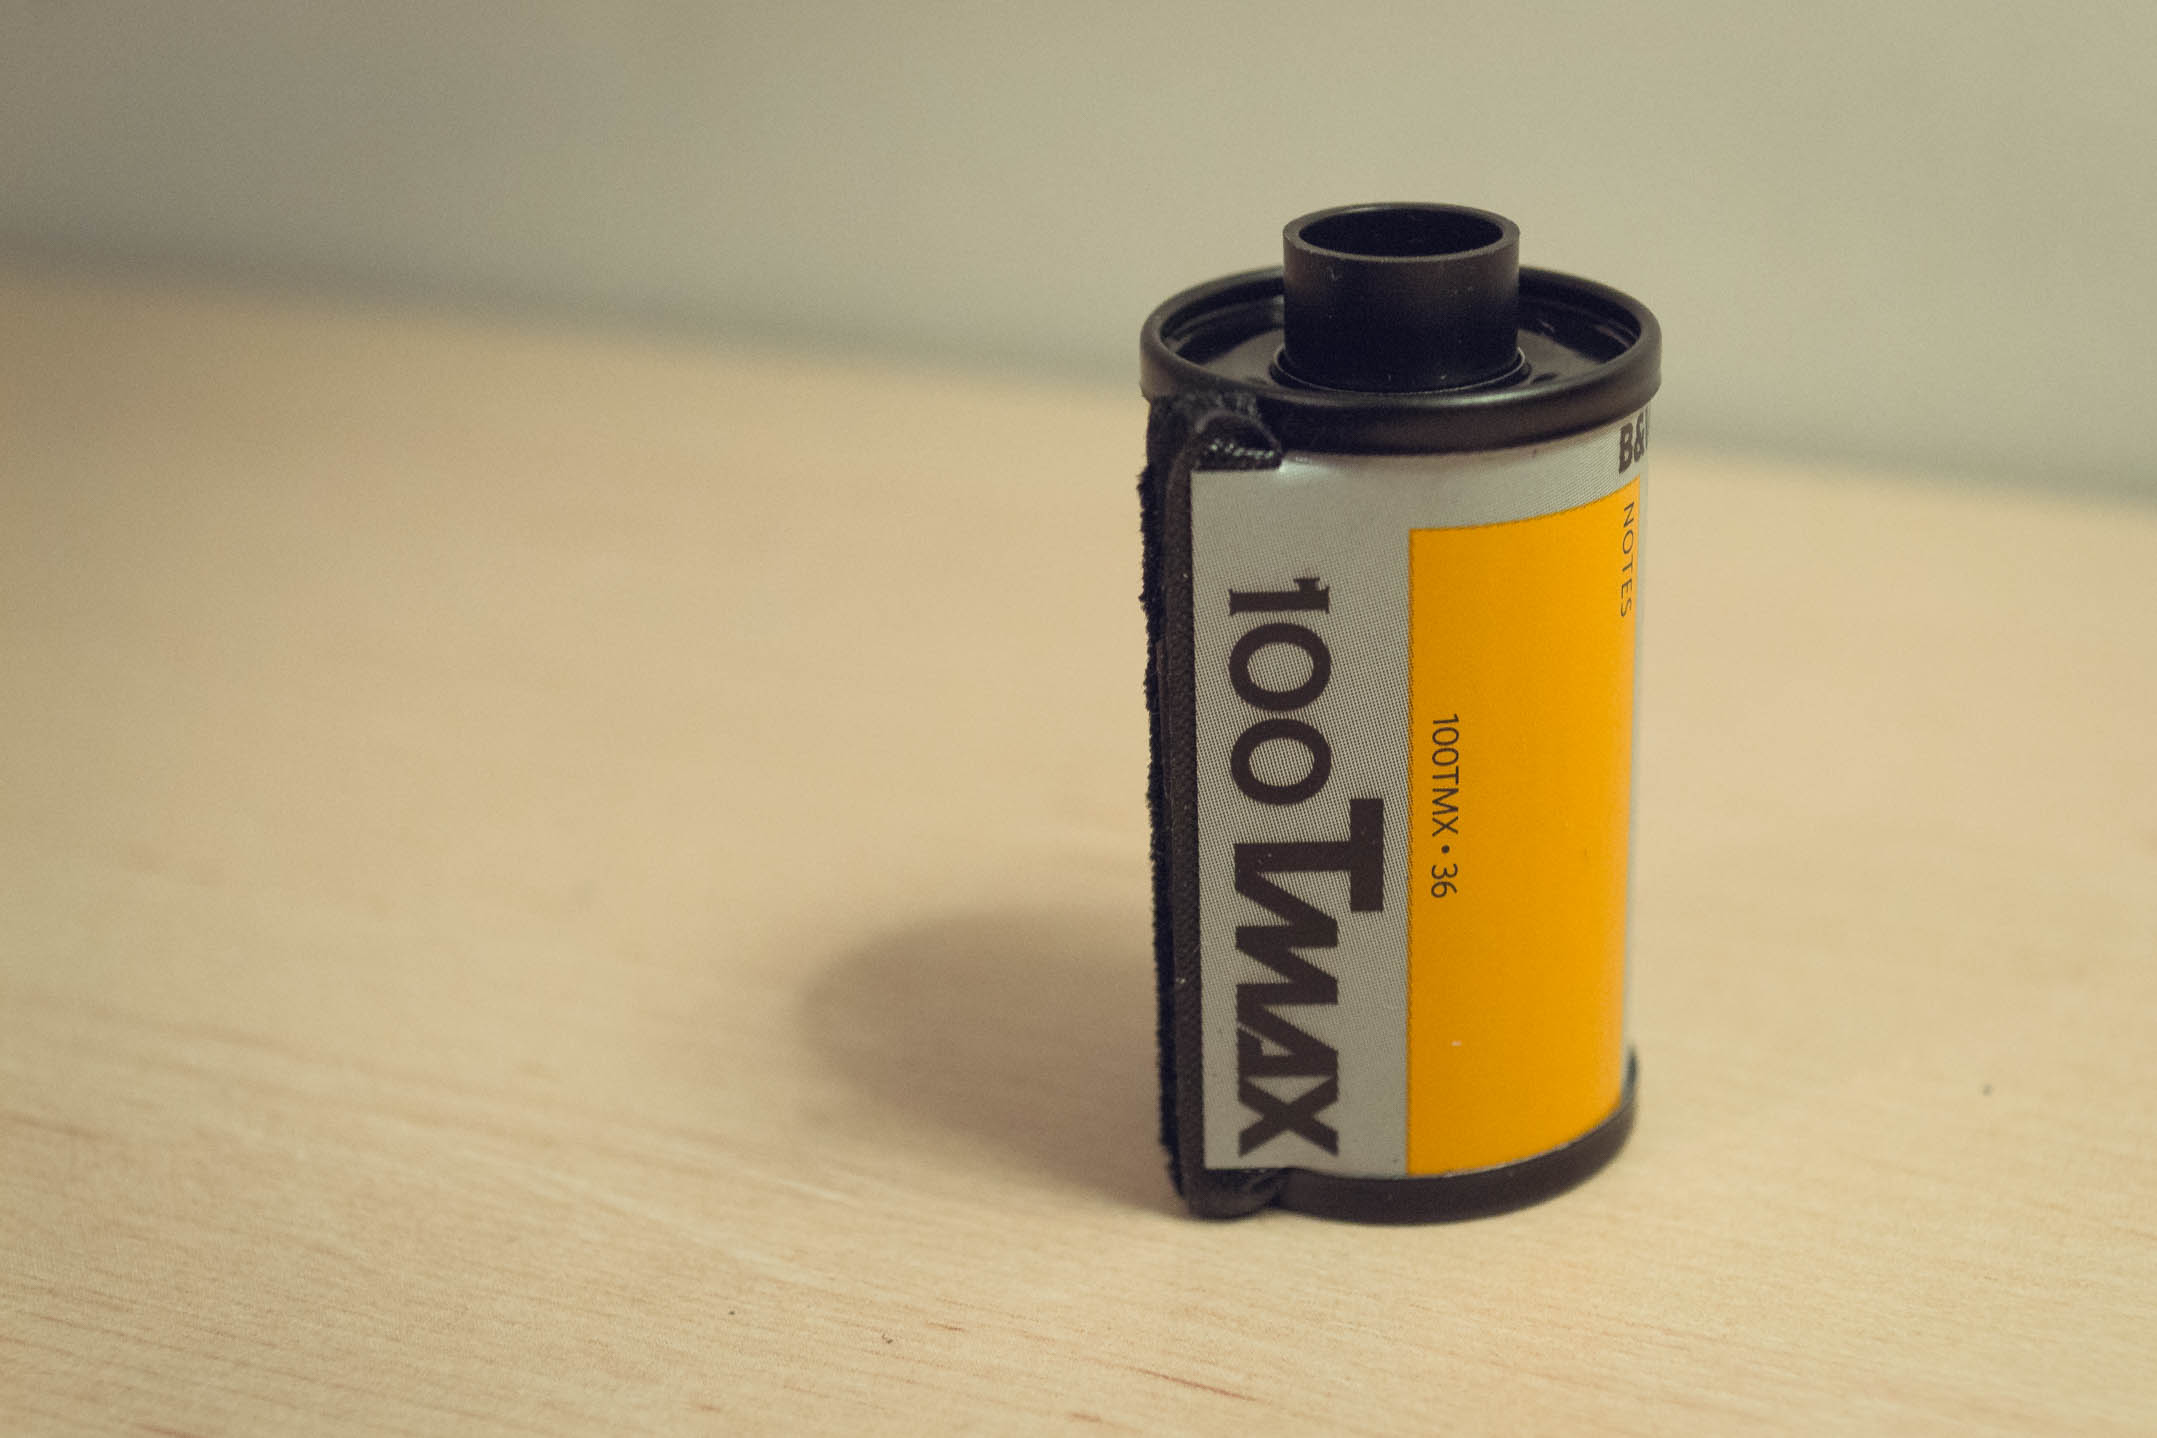 Pellicule 24x36mm (Tmax 100)pouvant être utilisée dans le Nikon F801s